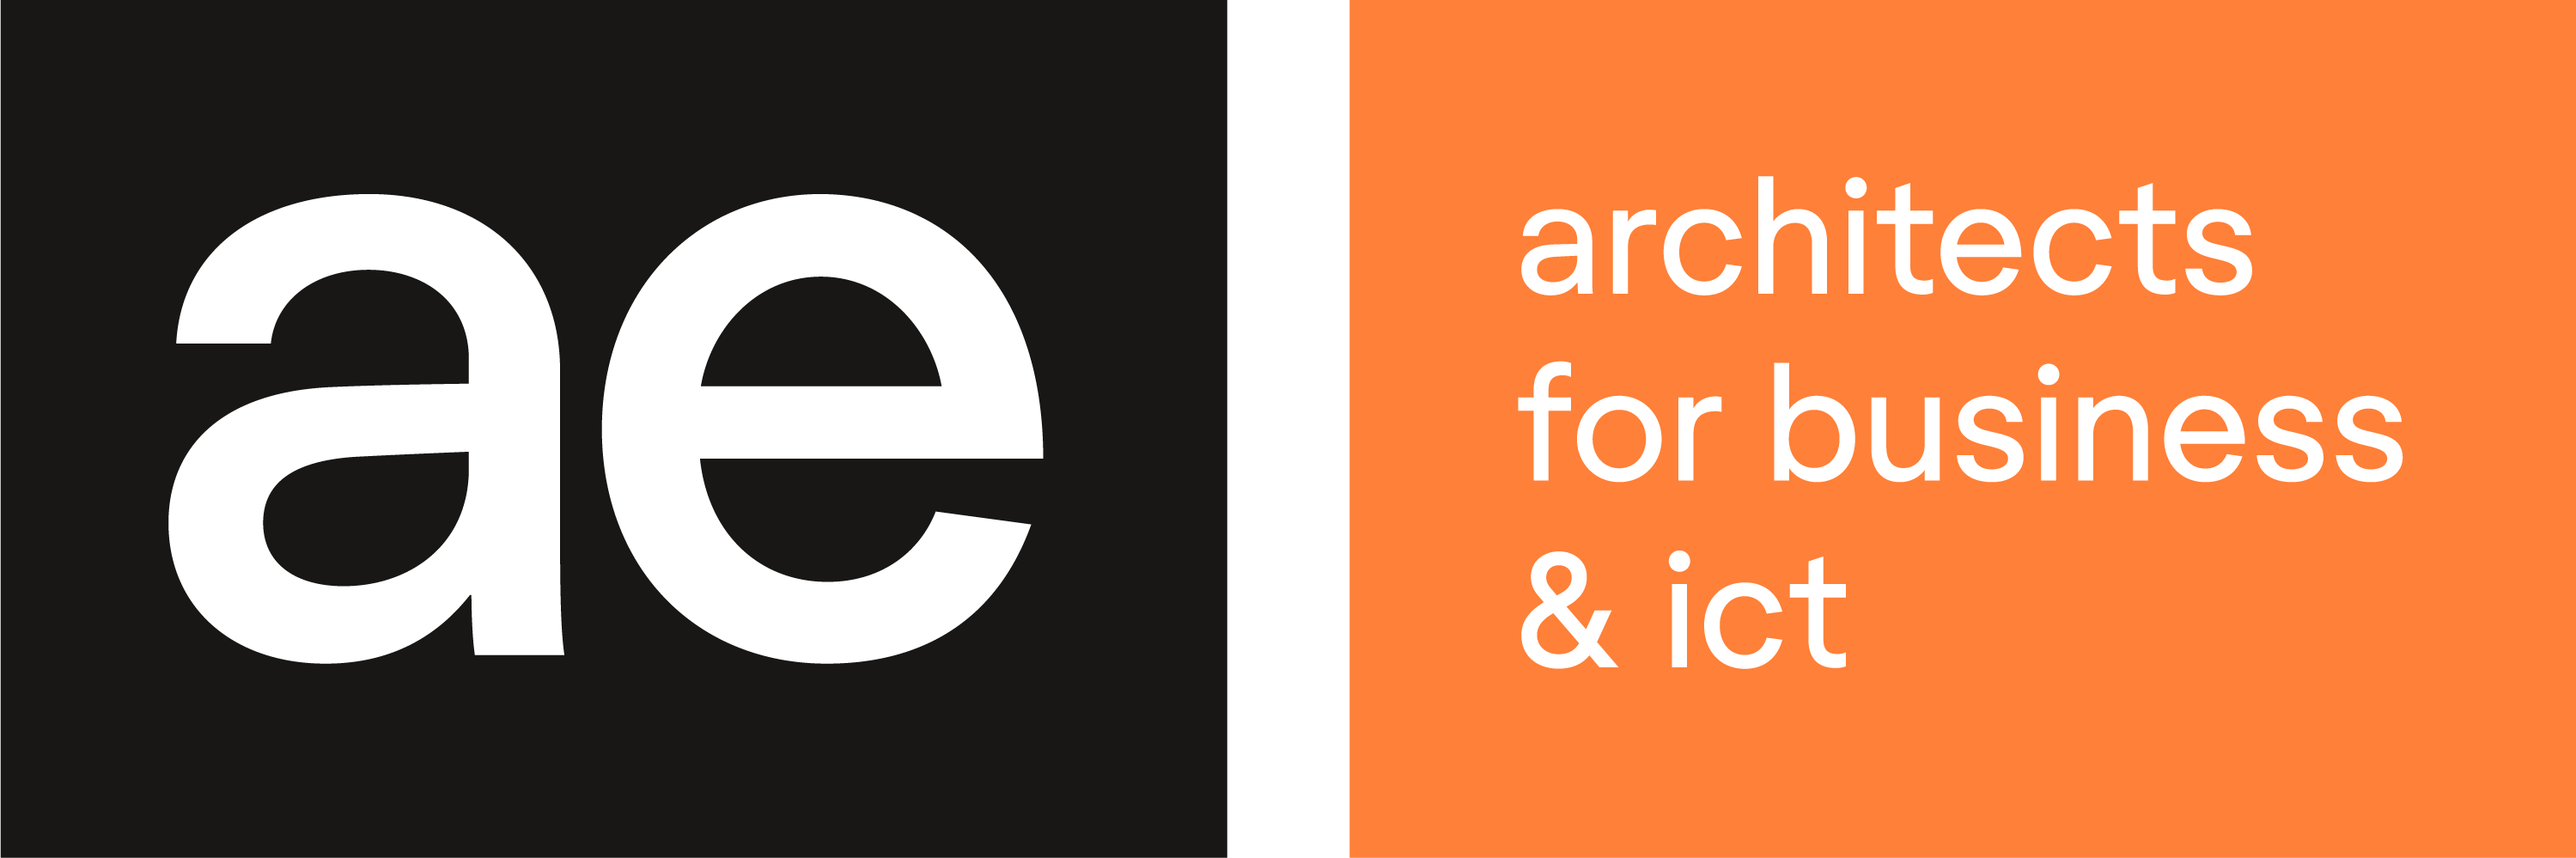 AE logo